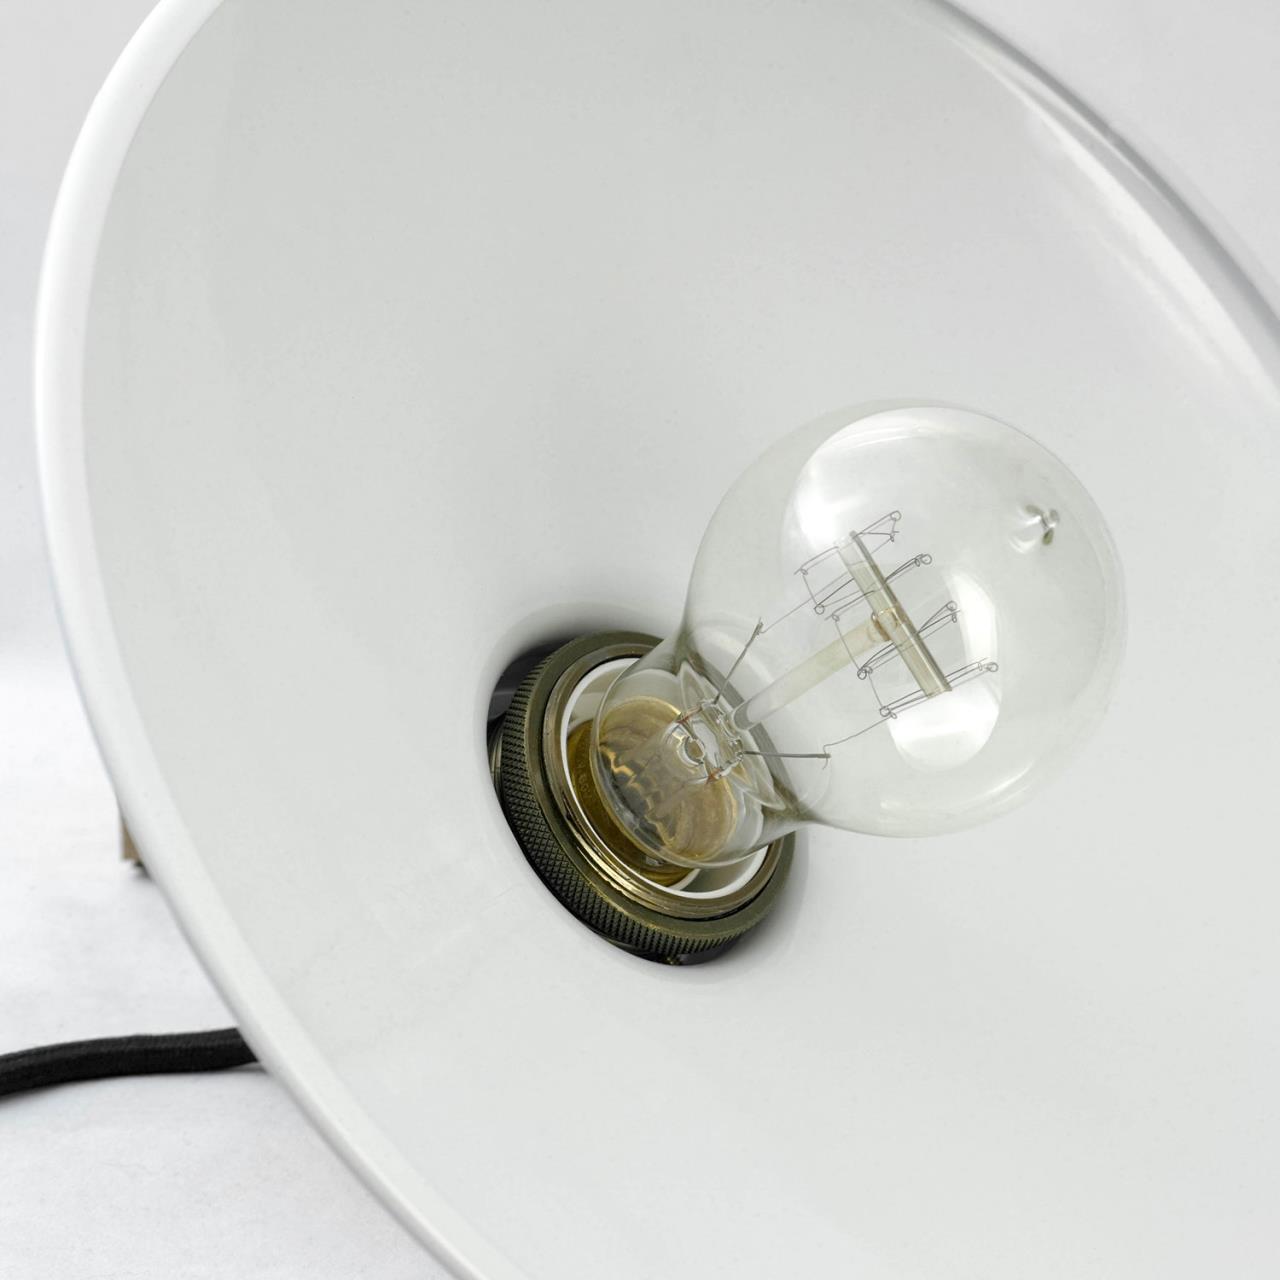 Подвесной светильник Lussole  Glen cove LSP-9605